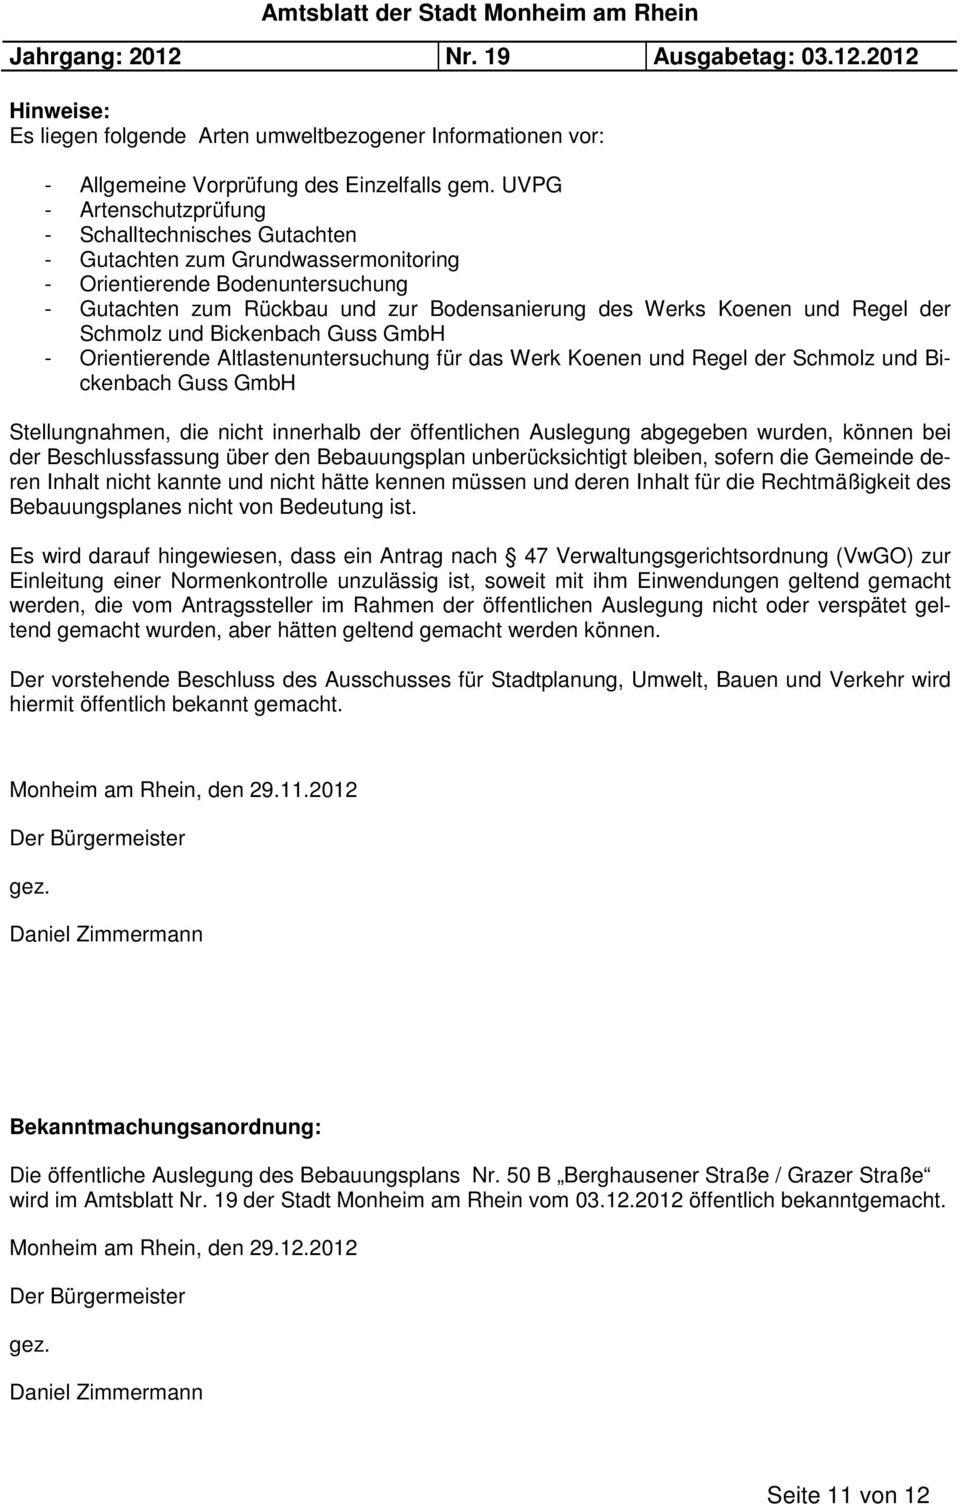 Regel der Schmolz und Bickenbach Guss GmbH - Orientierende Altlastenuntersuchung für das Werk Koenen und Regel der Schmolz und Bickenbach Guss GmbH Stellungnahmen, die nicht innerhalb der